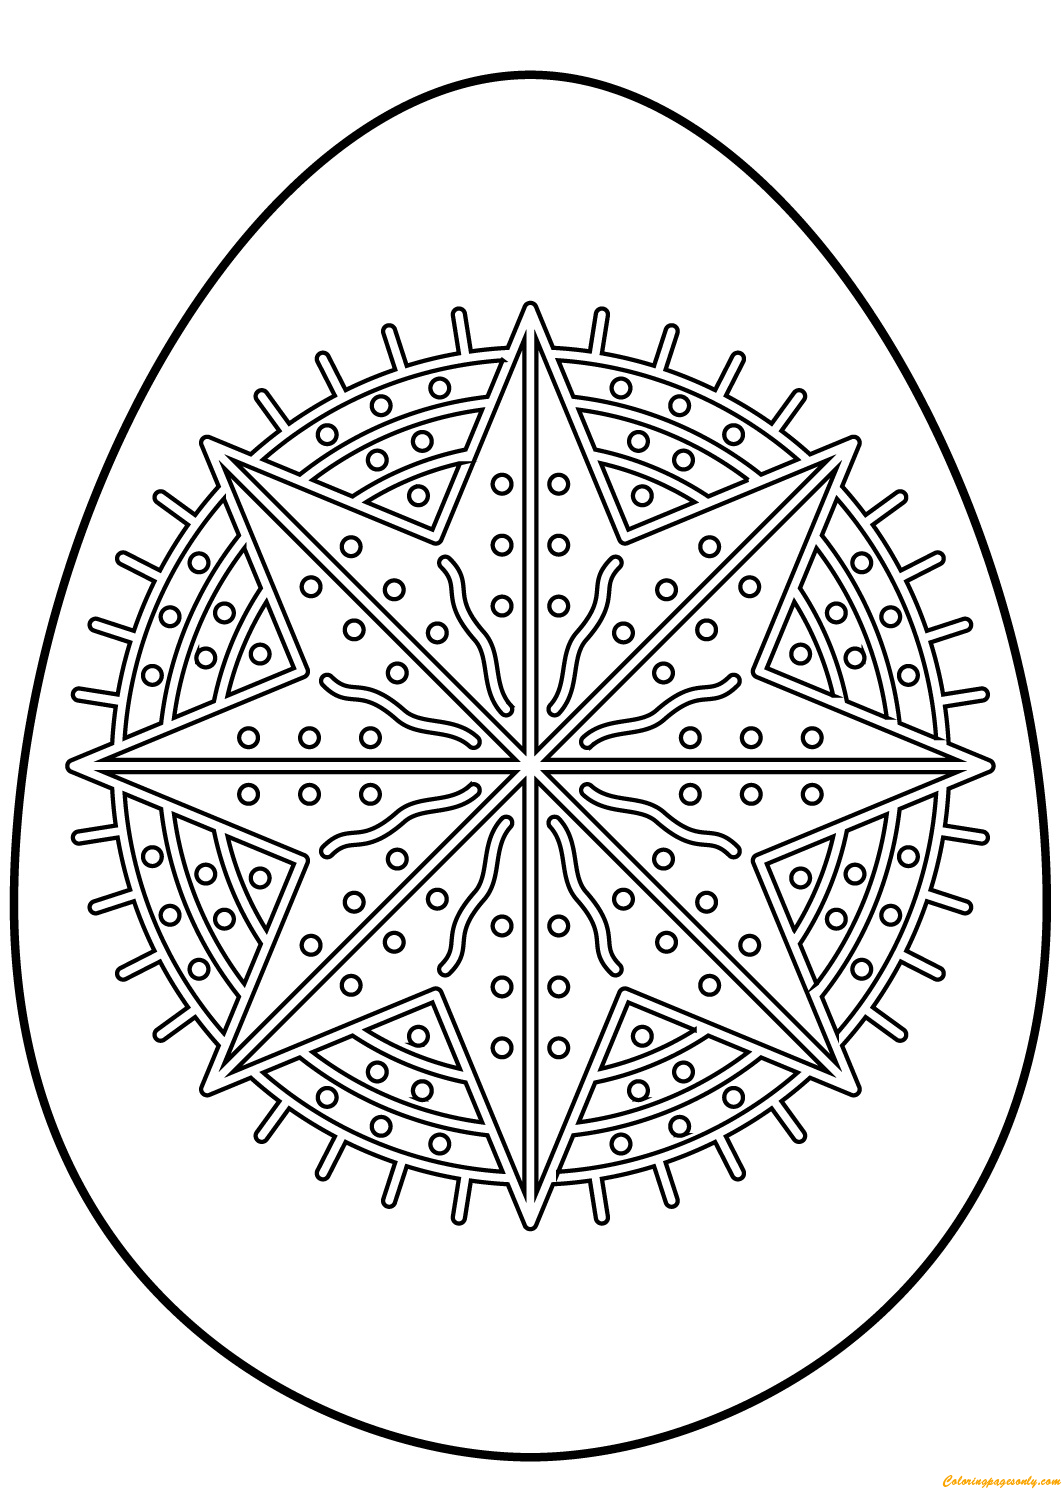 Osterei mit Oktagramm-Sternmuster von Easter Eggs